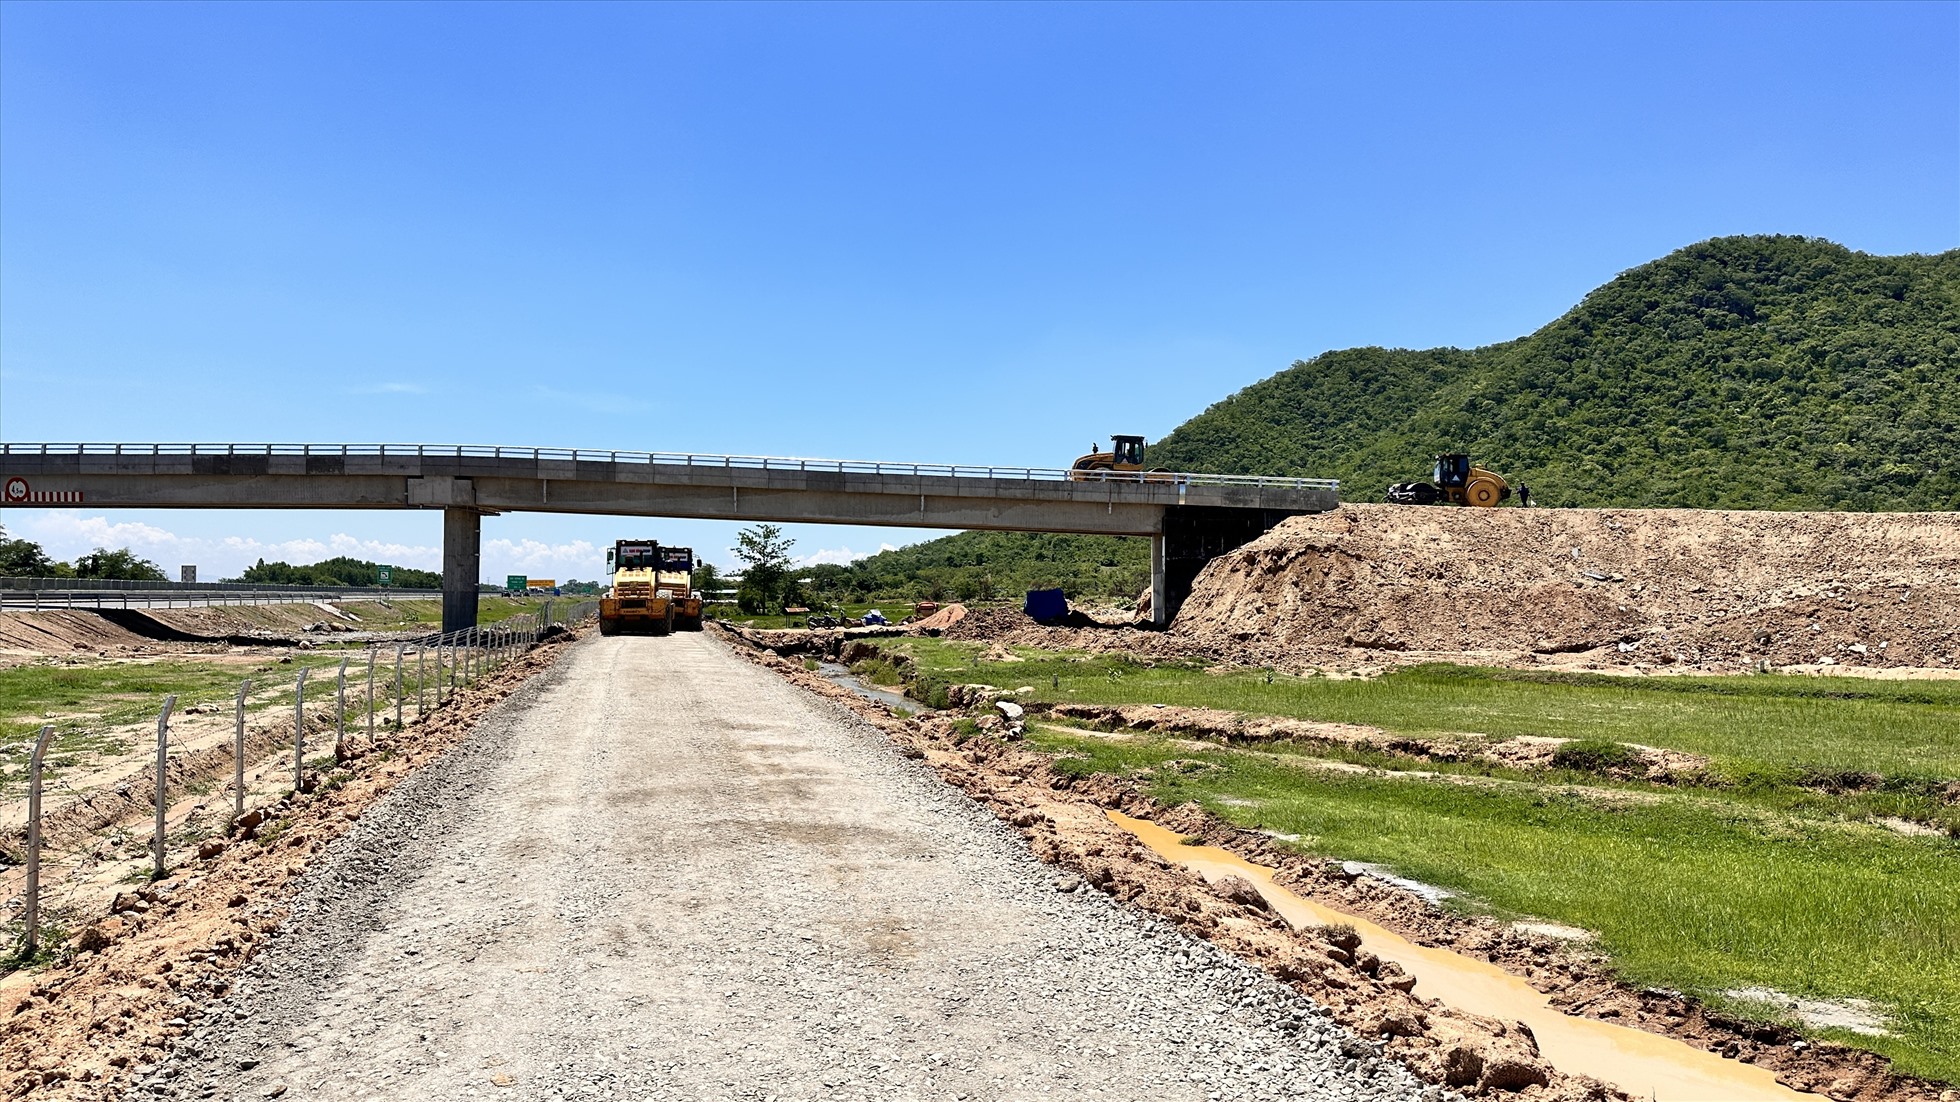 Nhân công, xe lu tập trung thi công tại khu vực cầu vượt núi Xả Thô, xã Hàm Trí, huyện Hàm Thuận Bắc.